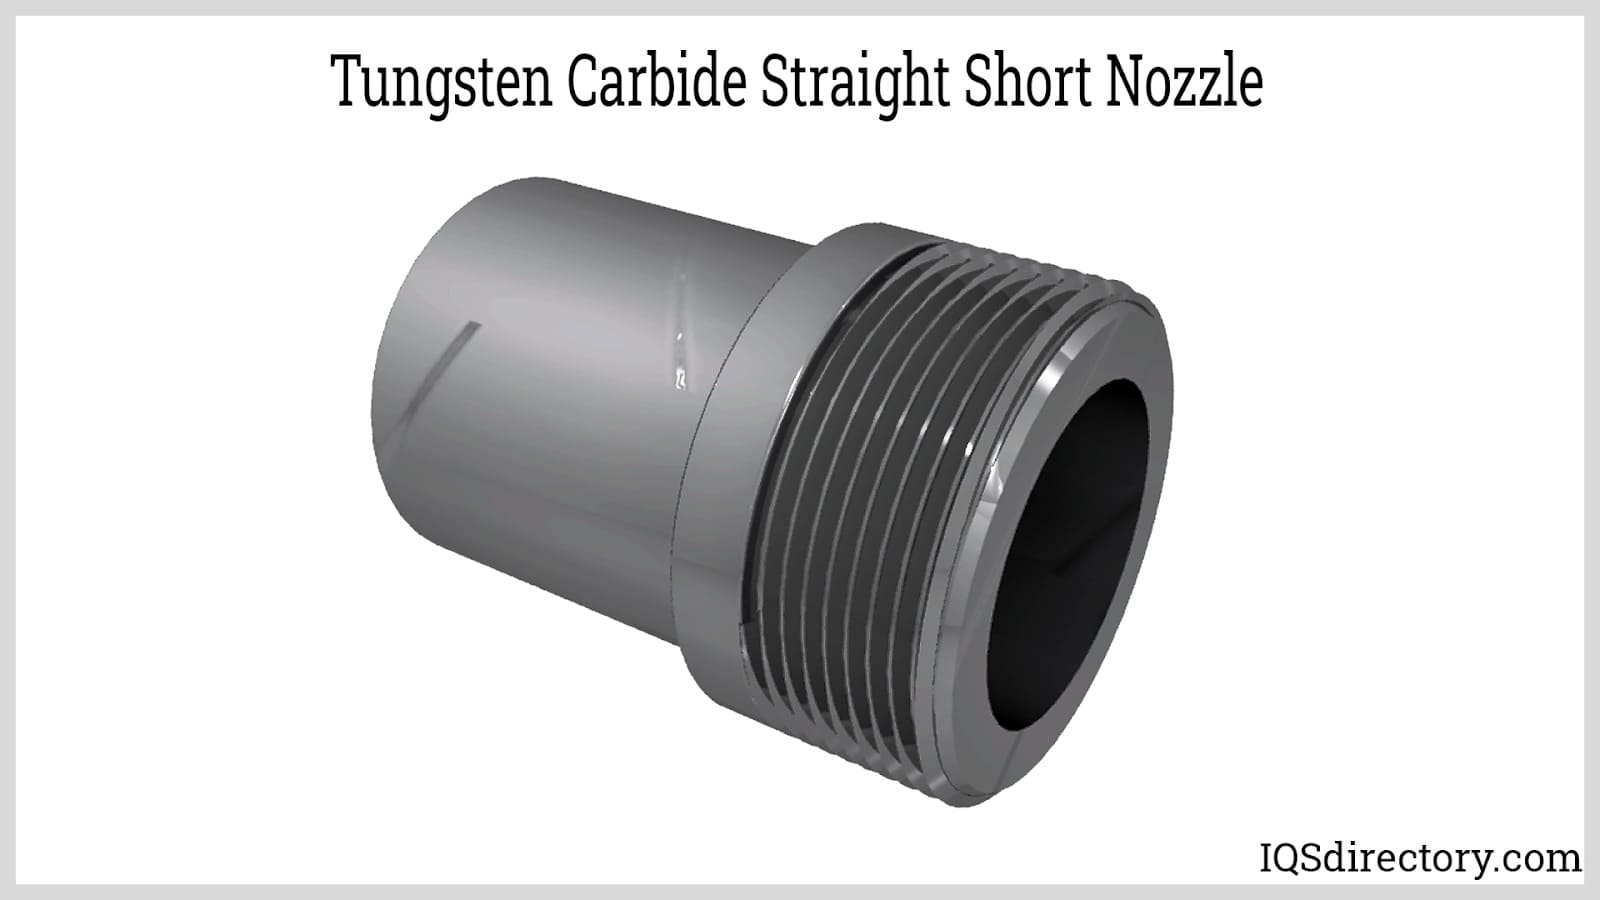 Tungsten Carbide Straight Short Nozzle